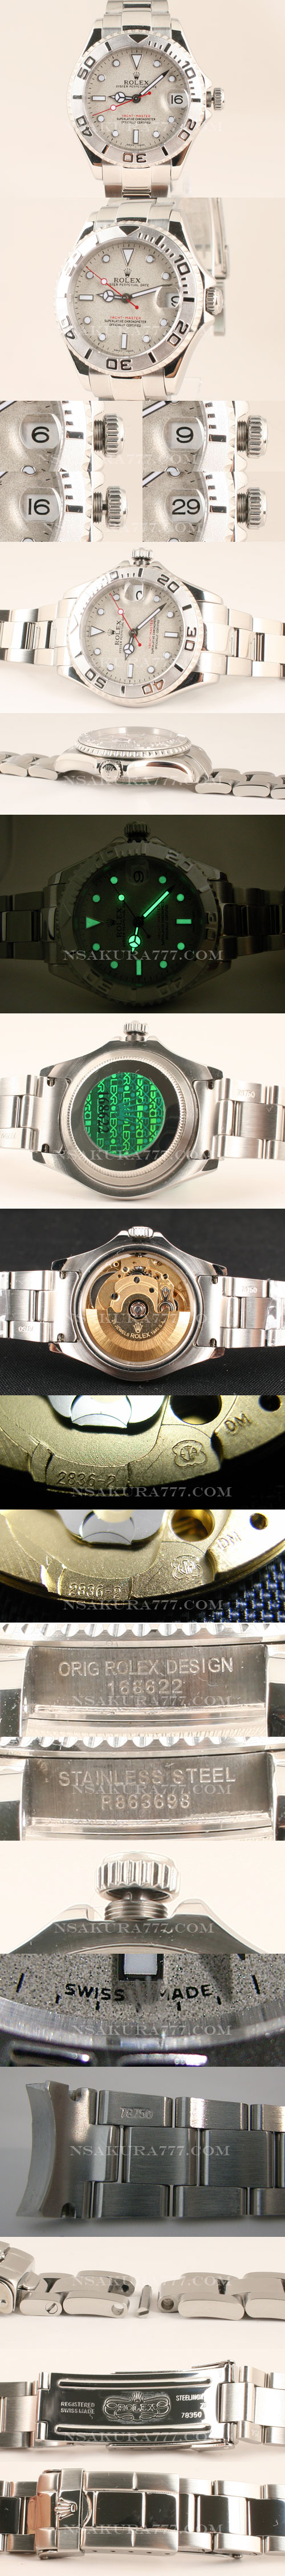 レプリカ時計ロレックス ヨットマスタボーイズ Swiss eta2836-2搭載 - ウインドウを閉じる